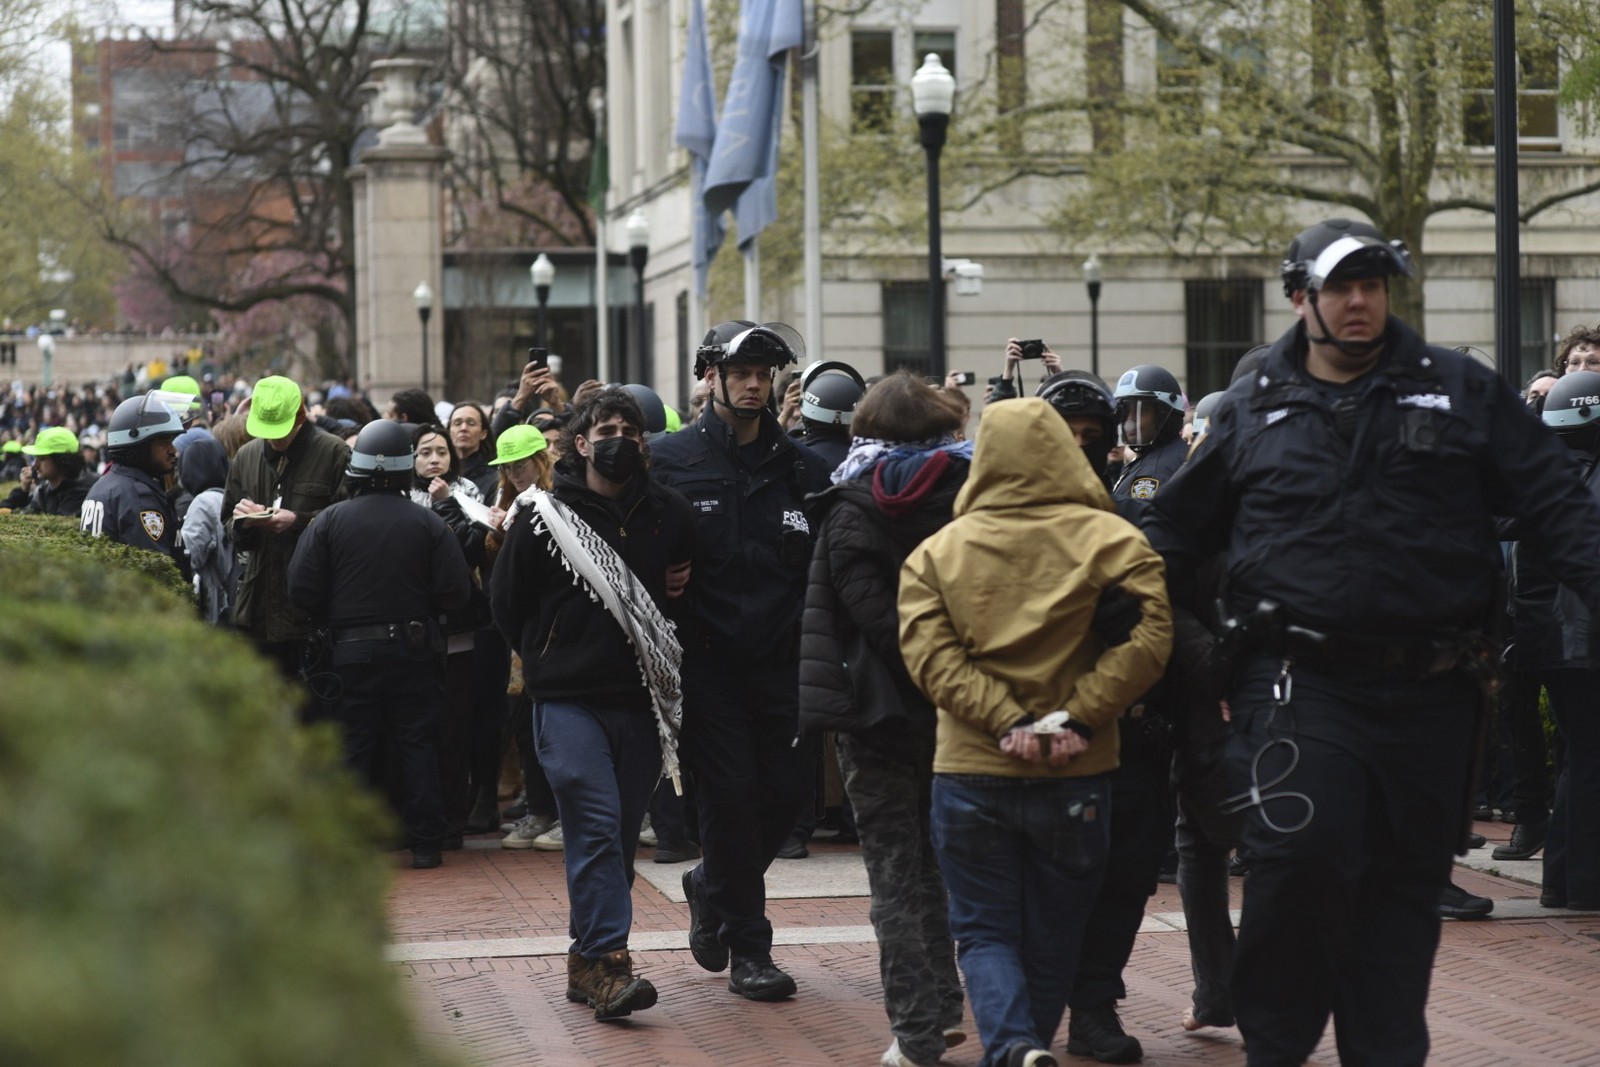 Manifestantes pró-palestina são levados pela polícia após ato no campus da Universidade Columbia, em Nova York — Foto: C.S. Muncy/The New York Times